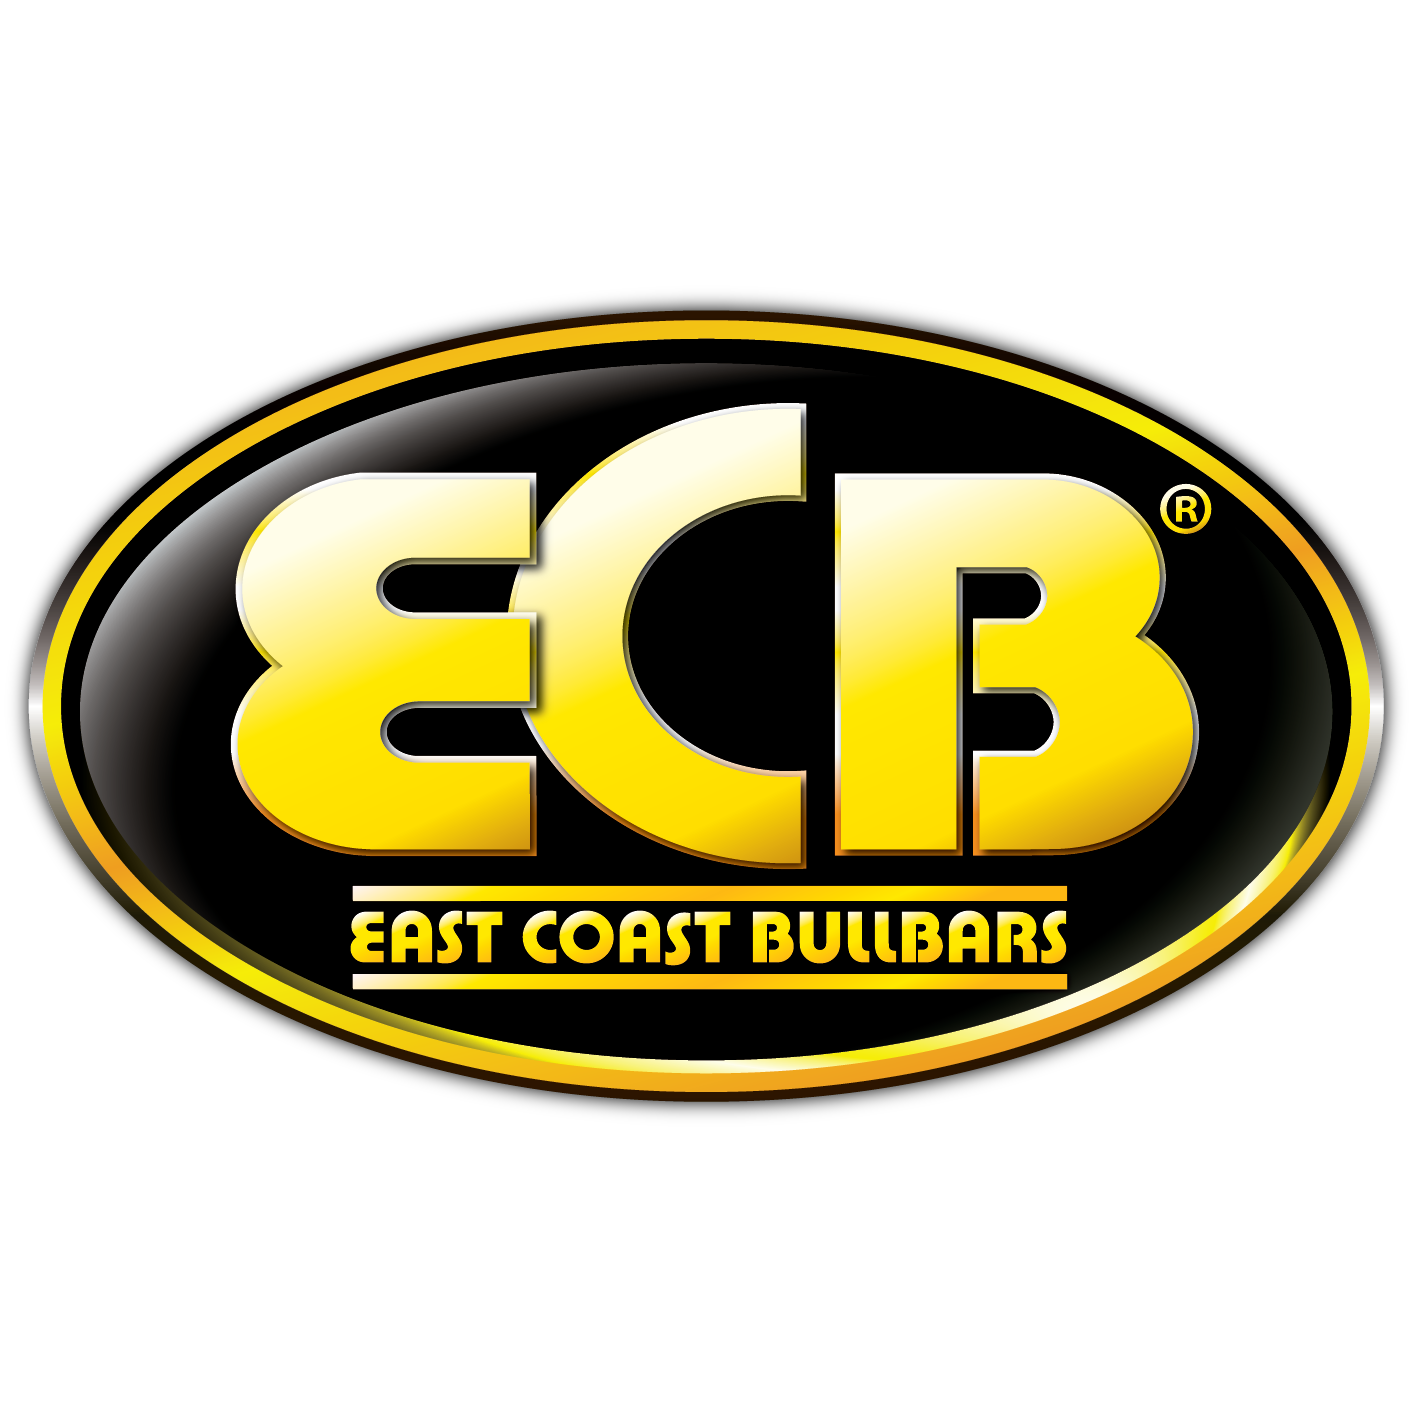 East Coast Bullbars logo